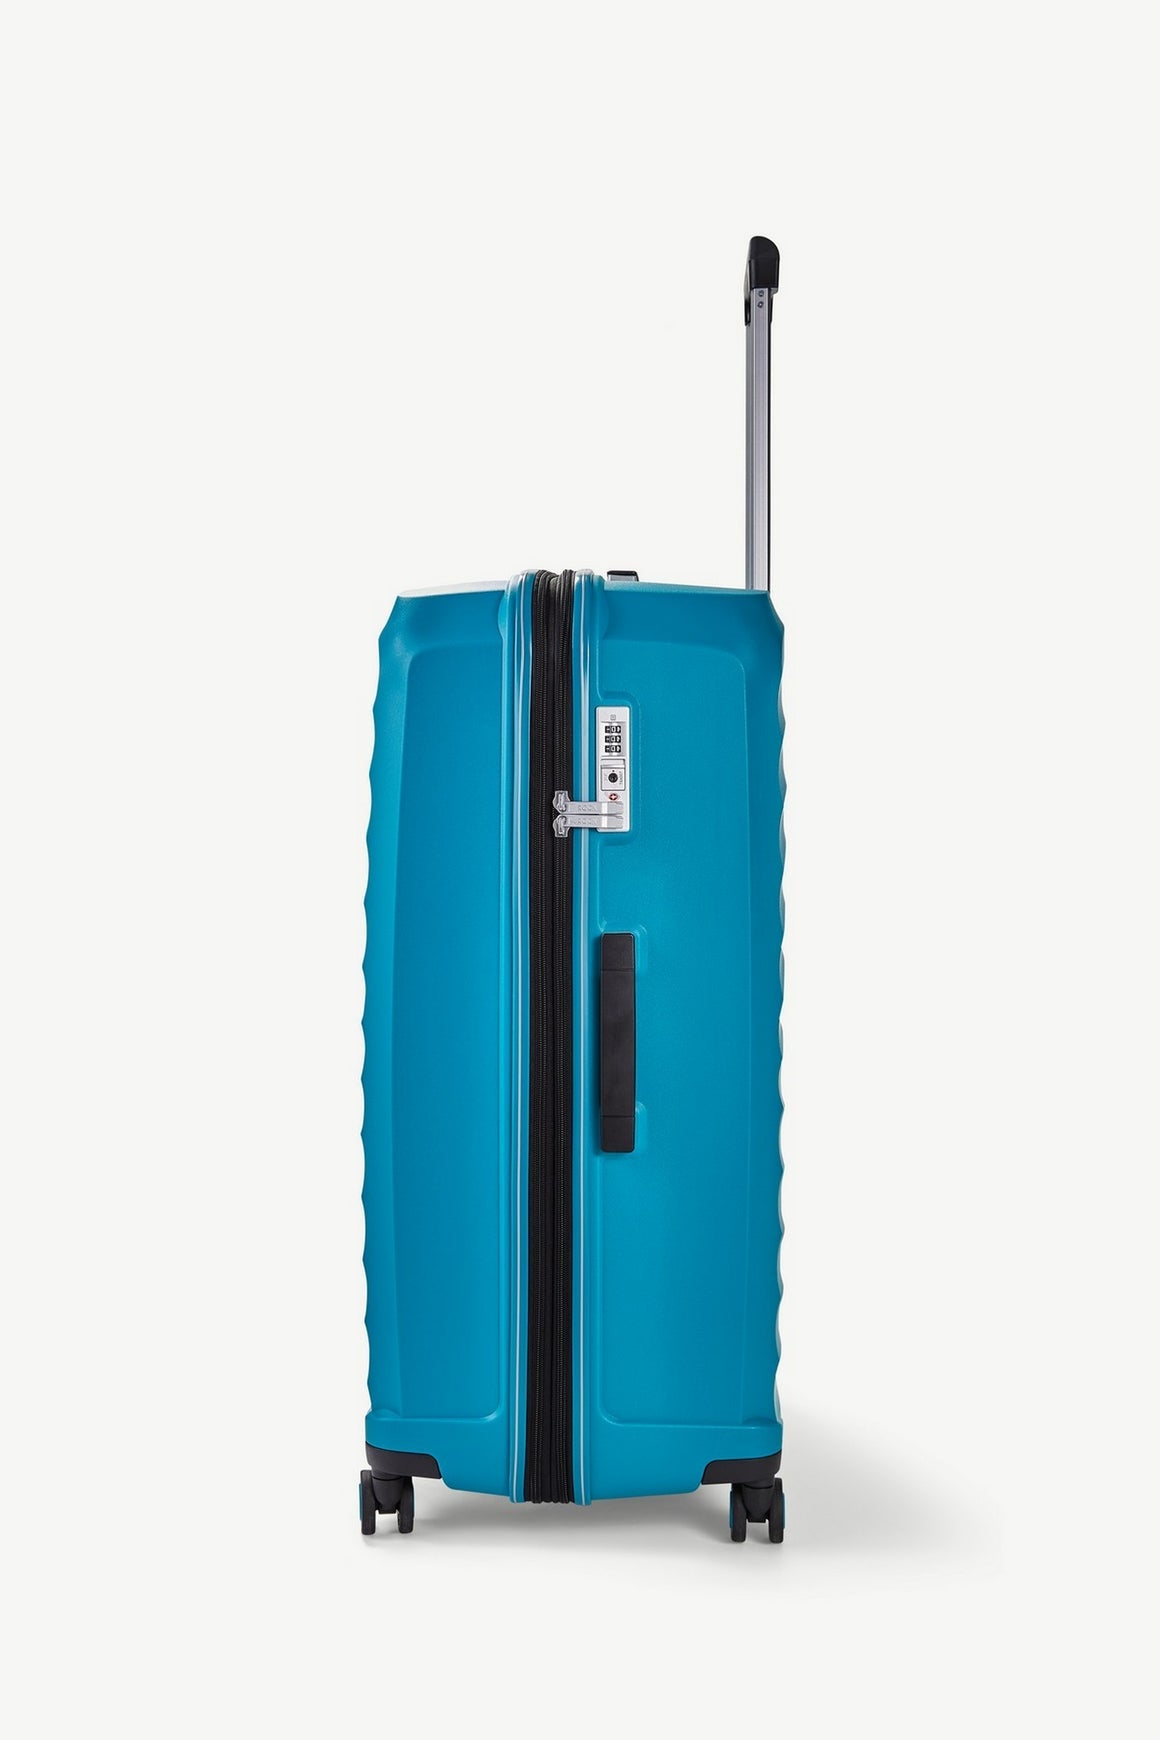 Sunwave Large Suitcase